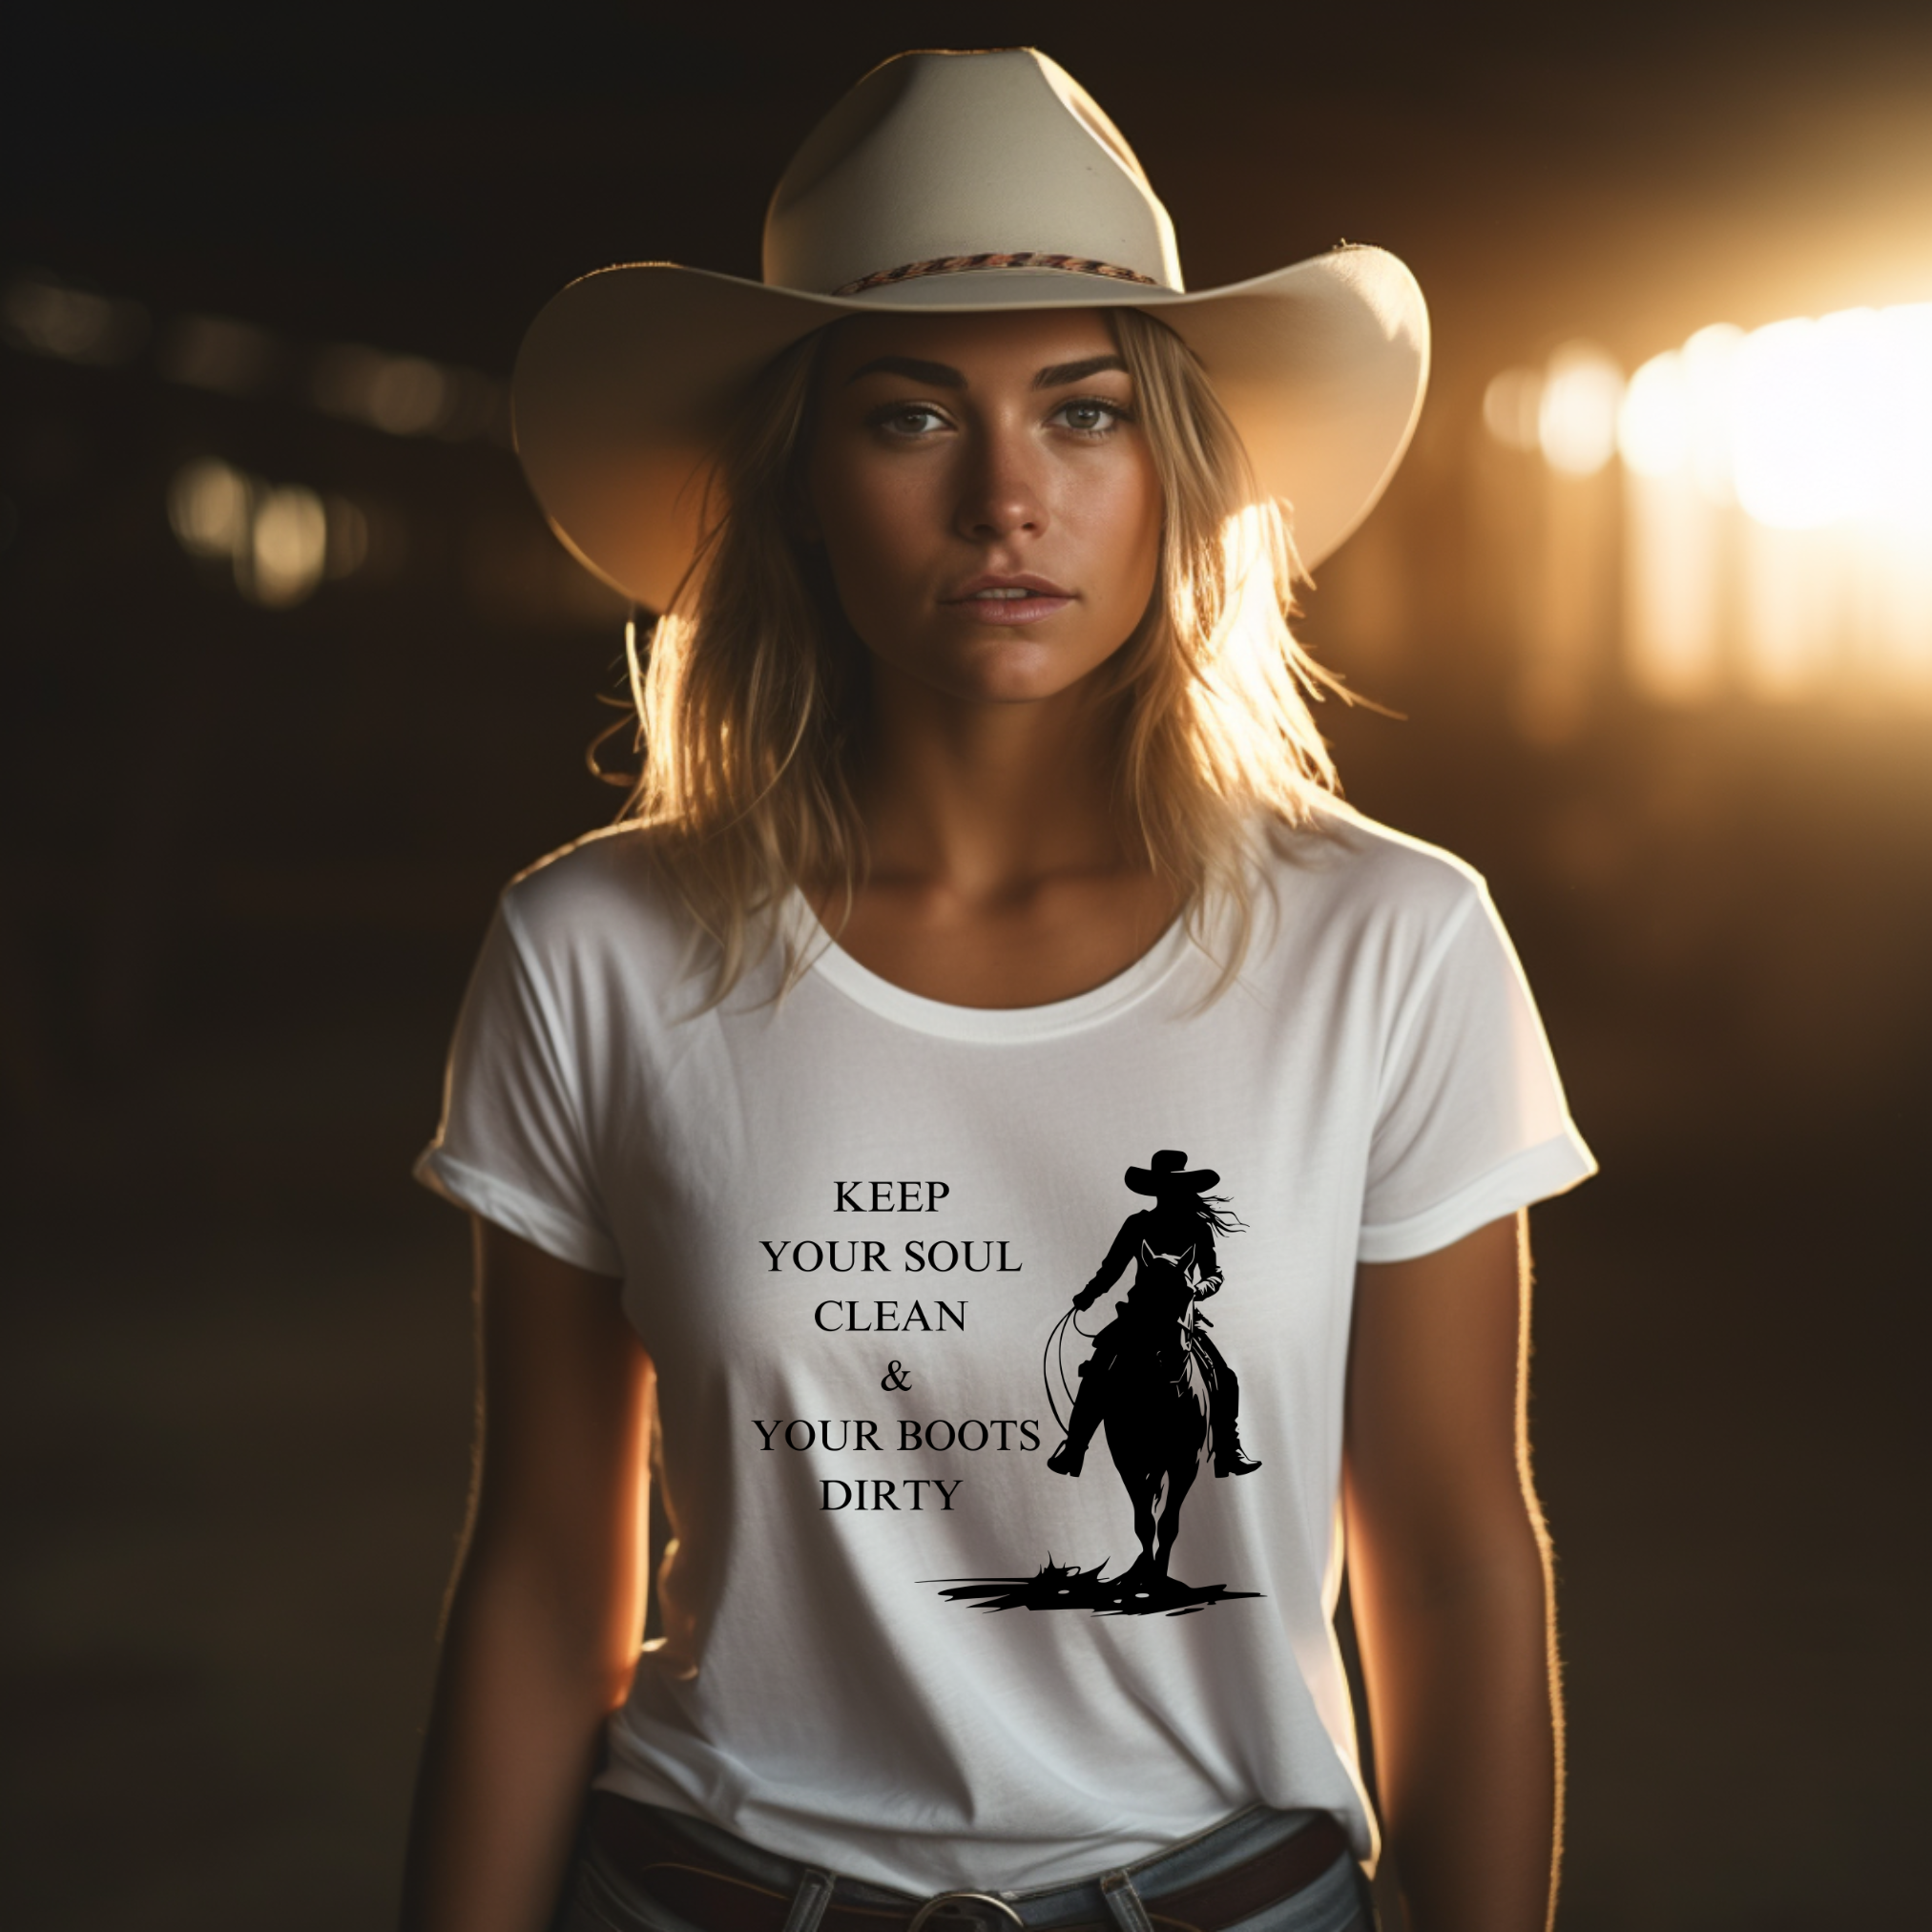 Western Boutique - Women's Western Wear, Western Soul®